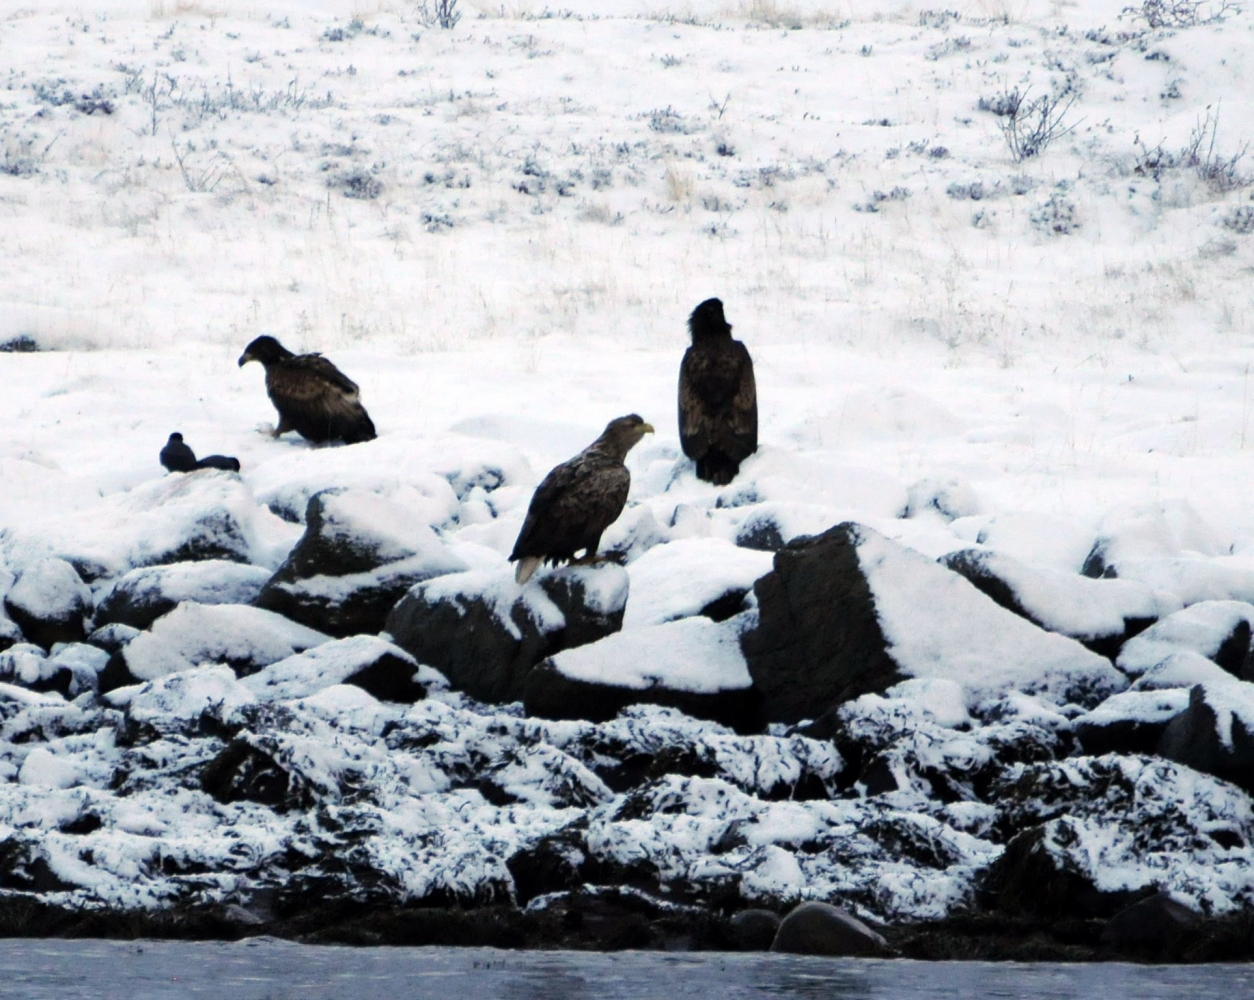 3 sea eagles sitting on snowy rocks